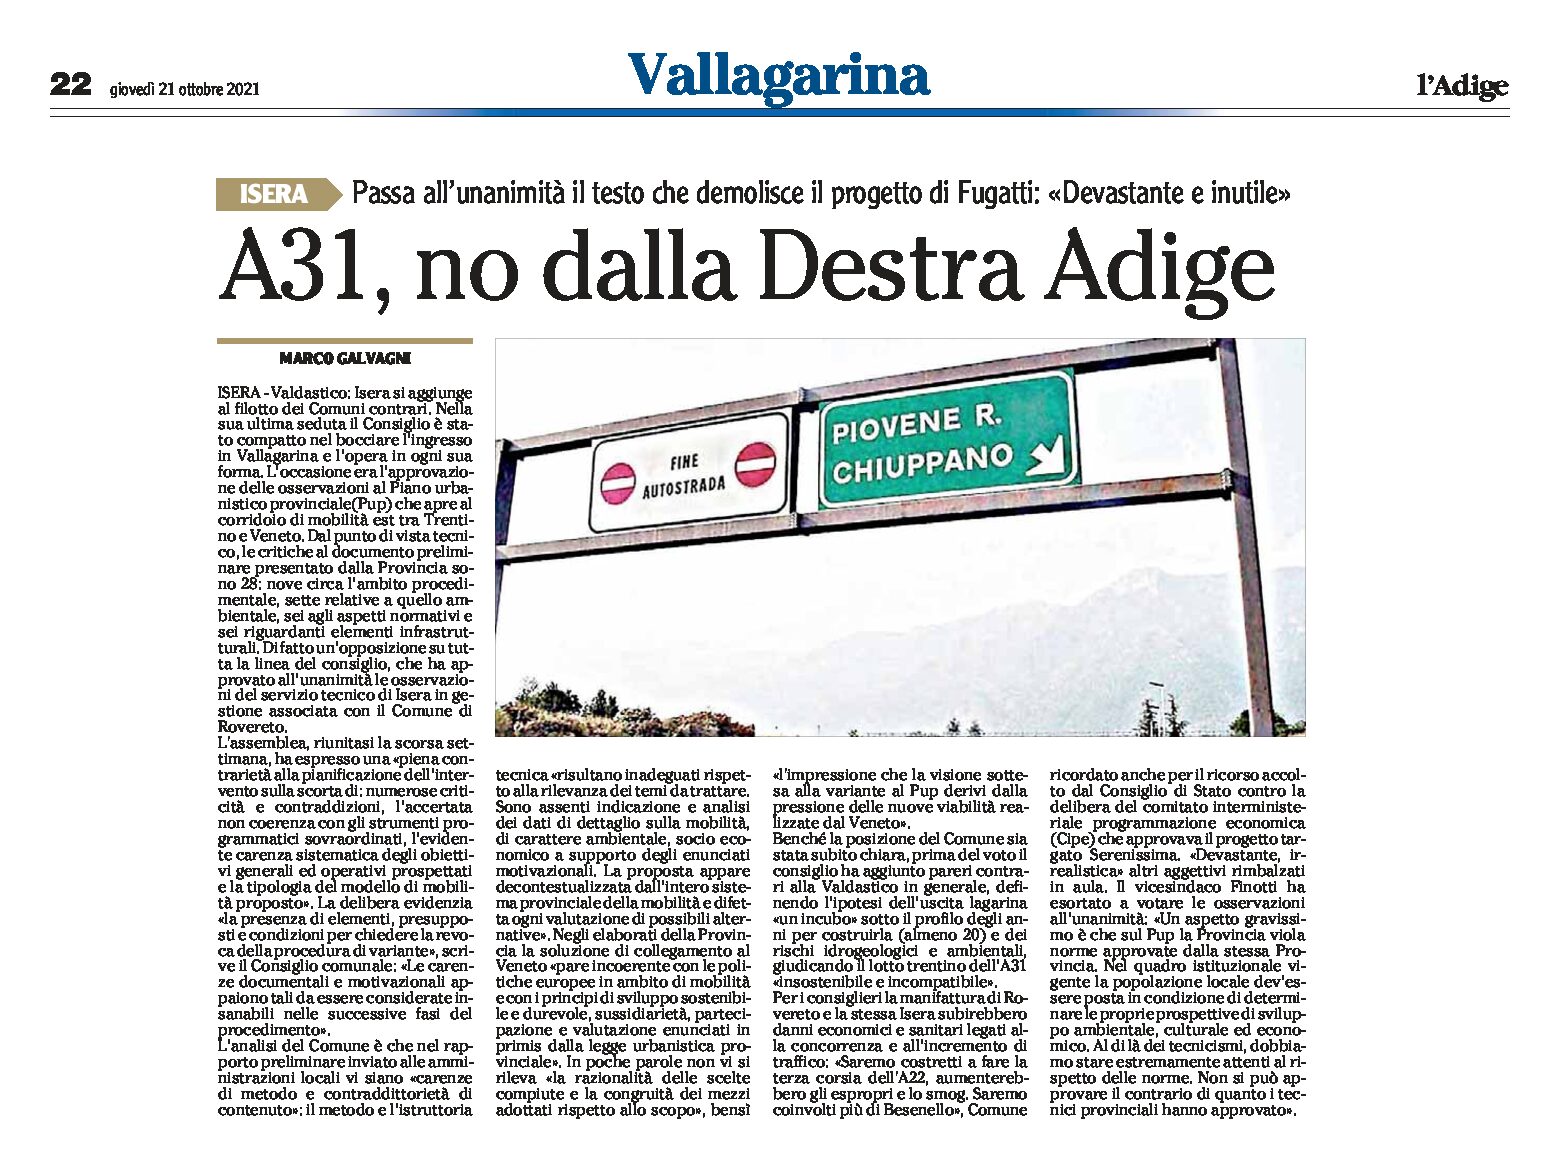 Isera: A31, no dalla Destra Adige. Passa all’unanimità il testo che demolisce il progetto di Fugatti